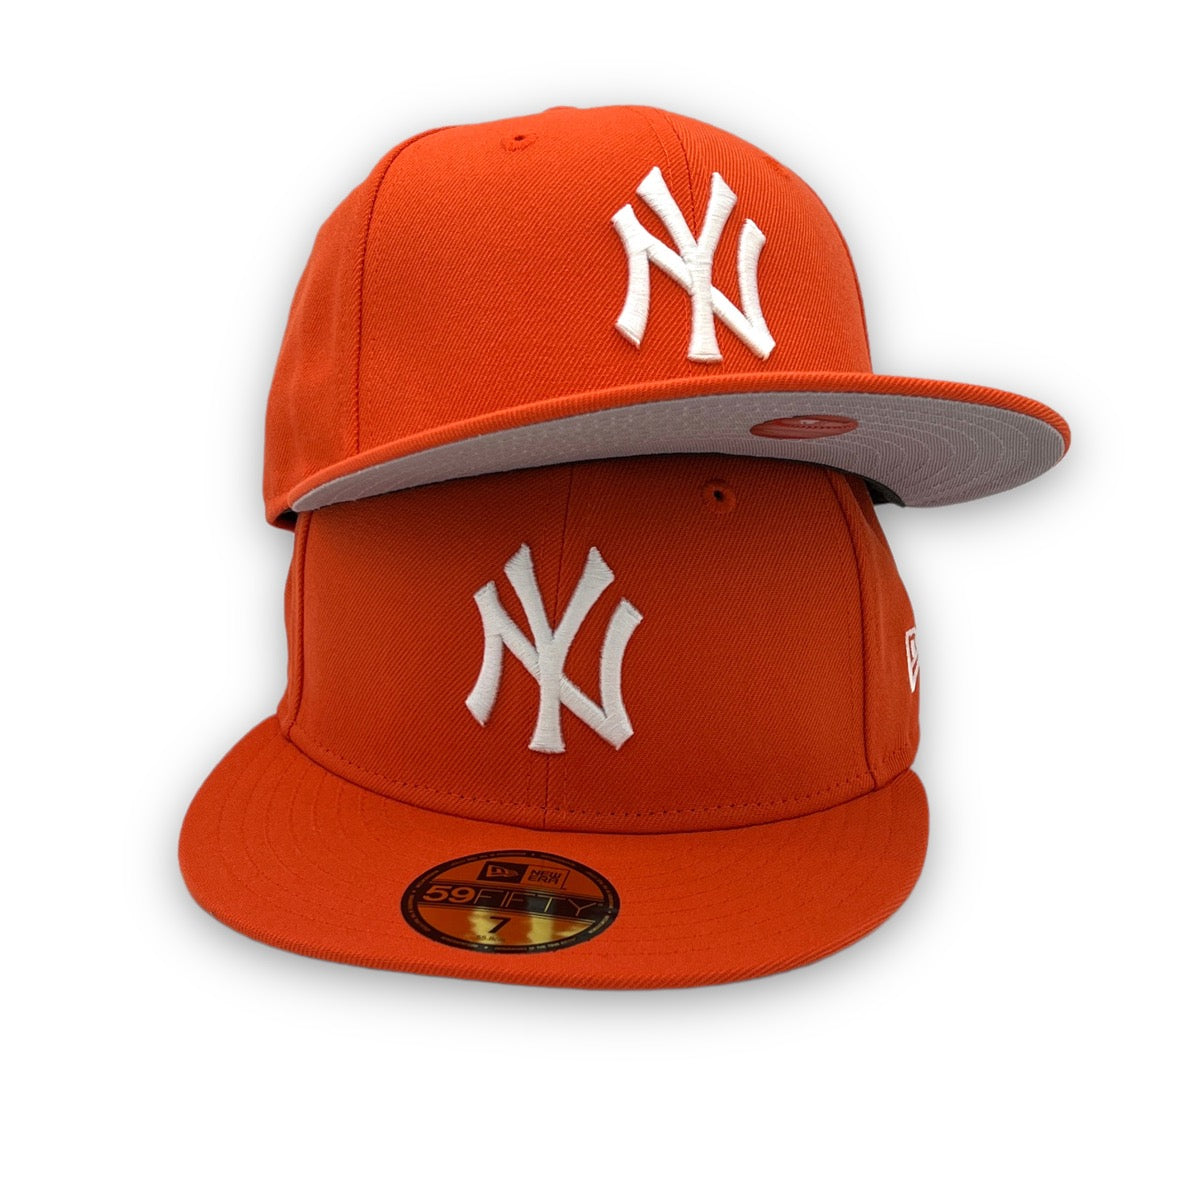 NY Yankees Basic New Era 59FIFTY Orange Fitted Hat – USA CAP KING